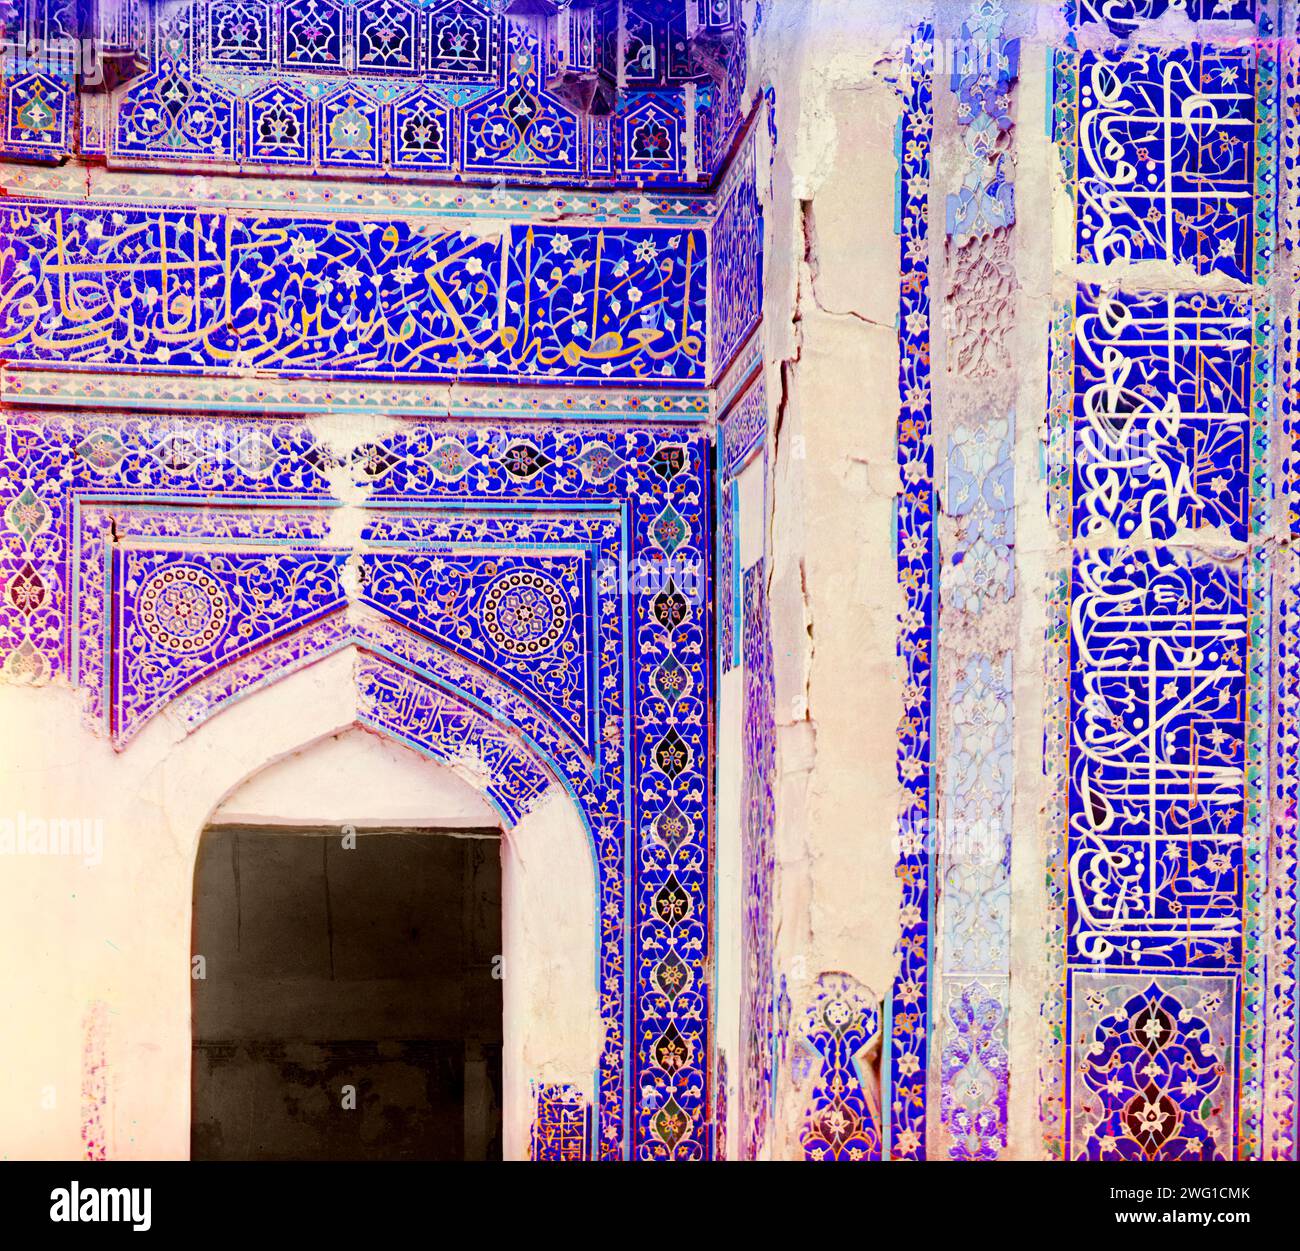 Mosaïques sur les murs de Shakh-i Zindeh, Samarkand, entre 1905 et 1915. L'ensemble Shah-i-Zinda comprend des mausolées et d'autres édifices rituels des 11e-15e et 19e siècles. Le chimiste et photographe russe Sergey Prokudin-Gorsky (1863-1944) fut un pionnier de la photographie couleur qu’il utilisa pour documenter la Russie du début du 20e siècle et son empire, y compris la disparition du mode de vie des peuples tribaux le long de la route de la soie en Asie centrale. Dans une chambre noire de wagon de chemin de fer fournie par le tsar Nicolas II, Prokudin-Gorsky a utilisé le procédé de photographie en trois couleurs pour enregistrer les costumes traditionnels et les événements Banque D'Images